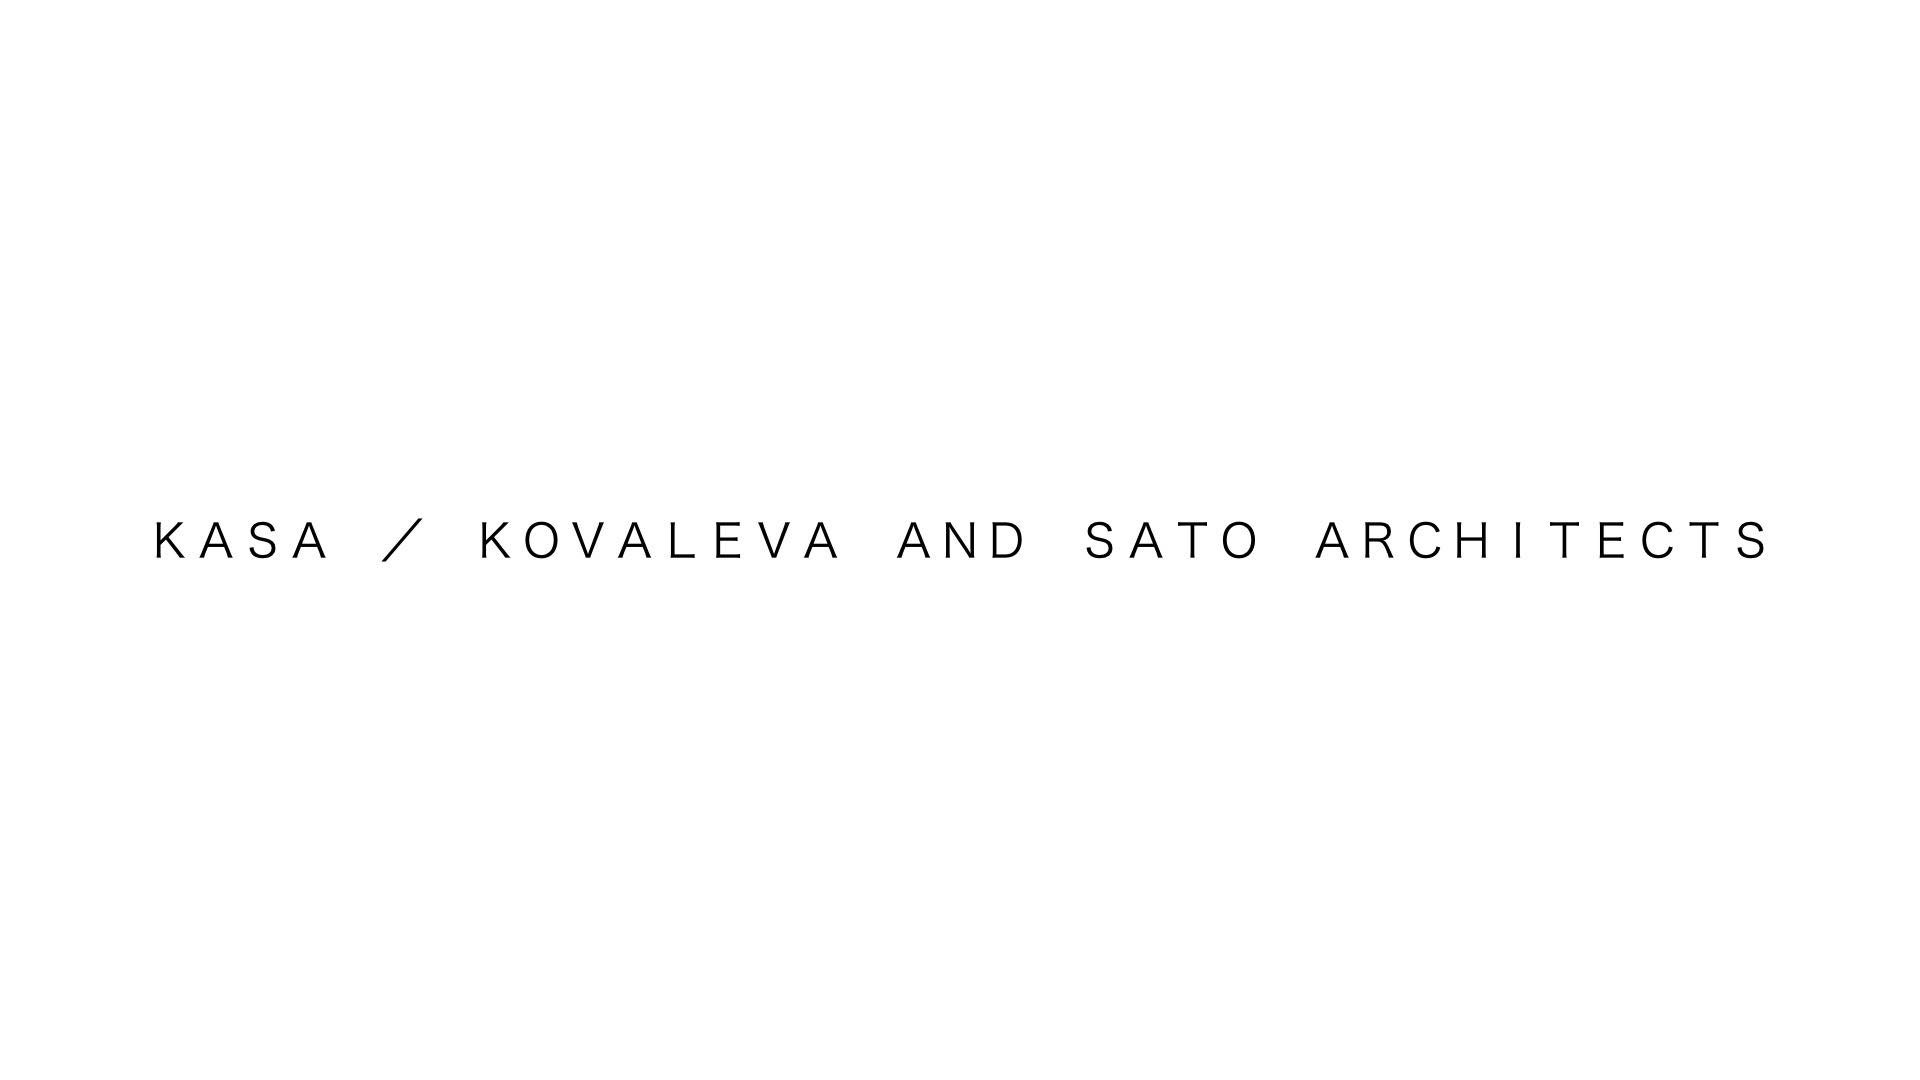 KASA / KOVALEVA AND SATO ARCHITECTS